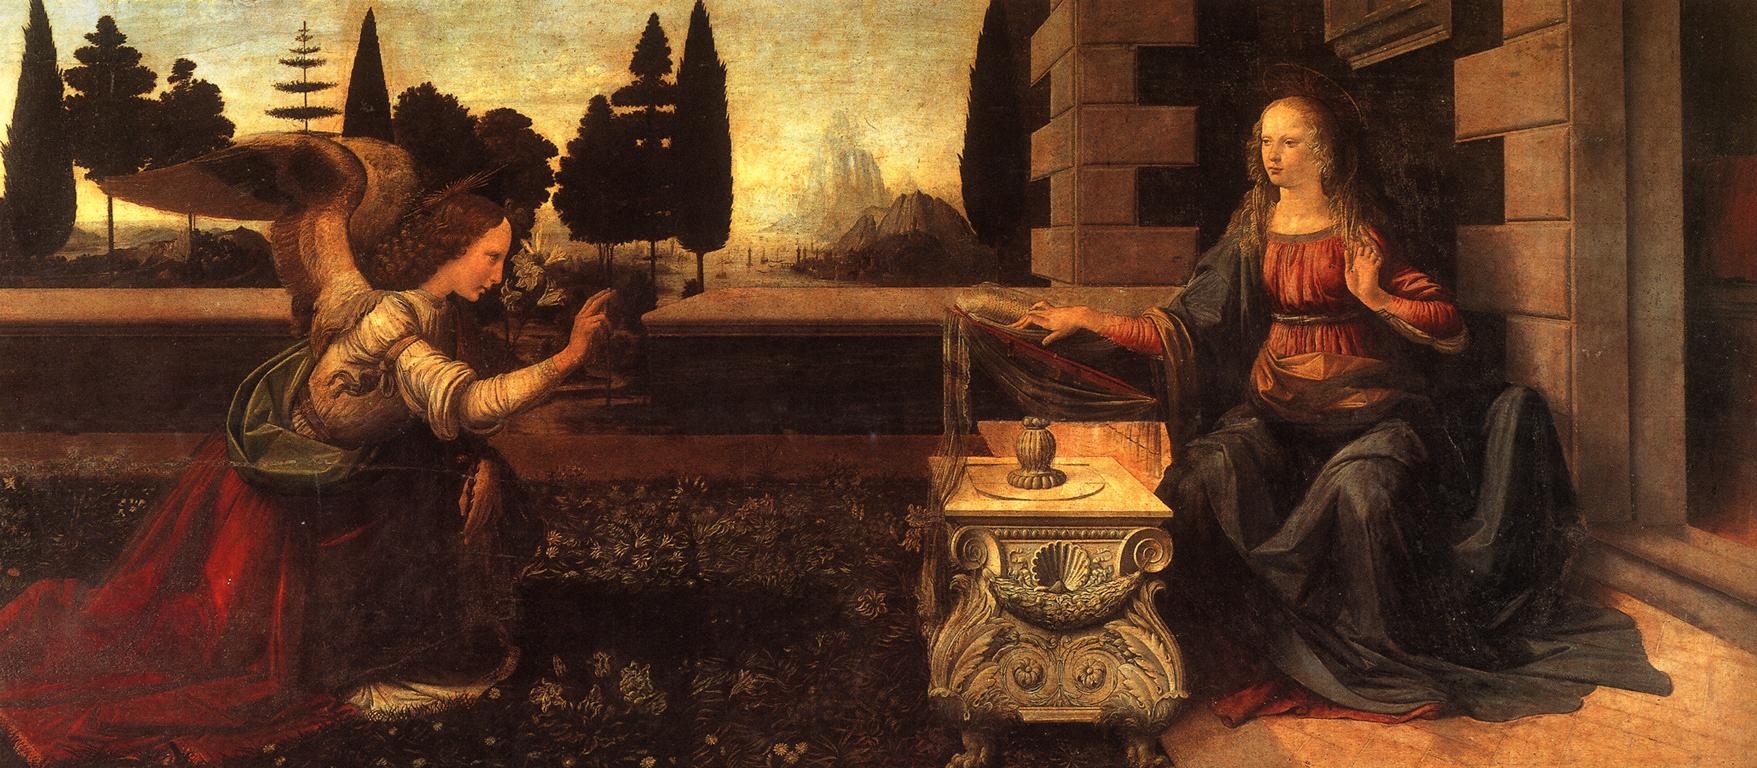 Annonciation by Leonardo da Vinci - c. 1472 - 217 x 98 cm Galleria degli Uffizi